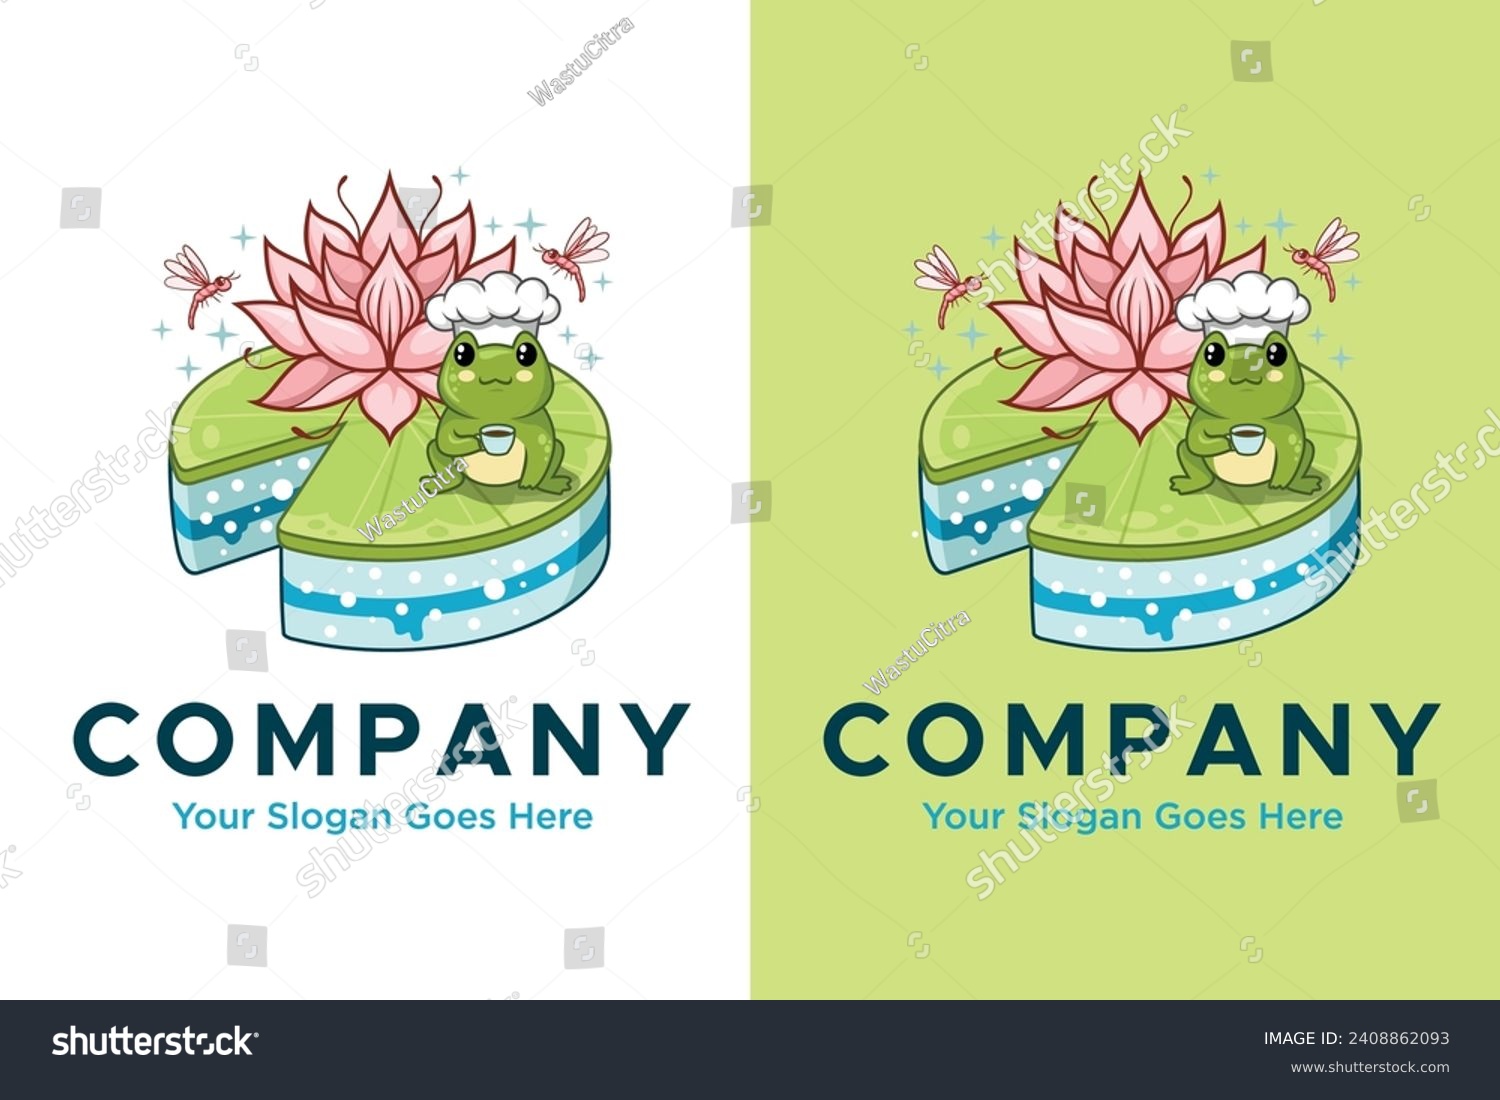 SVG of lotus leaf cake with cute frog chef illustration vector logo design svg